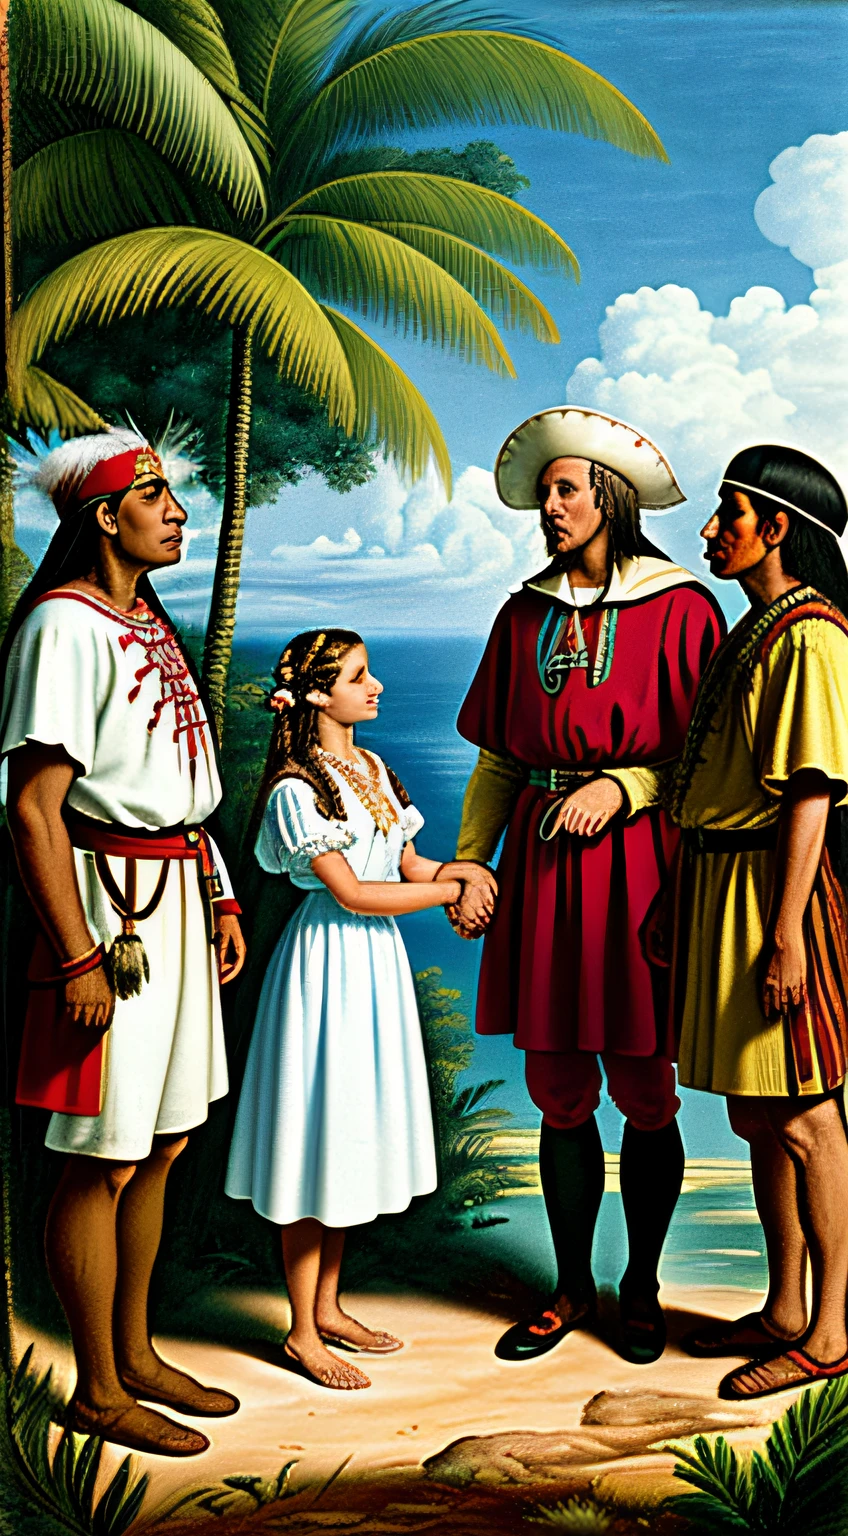 Escena histórica de Cristóbal Colón en atuendo de explorador, conocer a los nativos americanos vestidos con ropa tradicional, en un exuberante paisaje caribeño, Curiosidad y respeto mutuos, estilo fotorrealista.